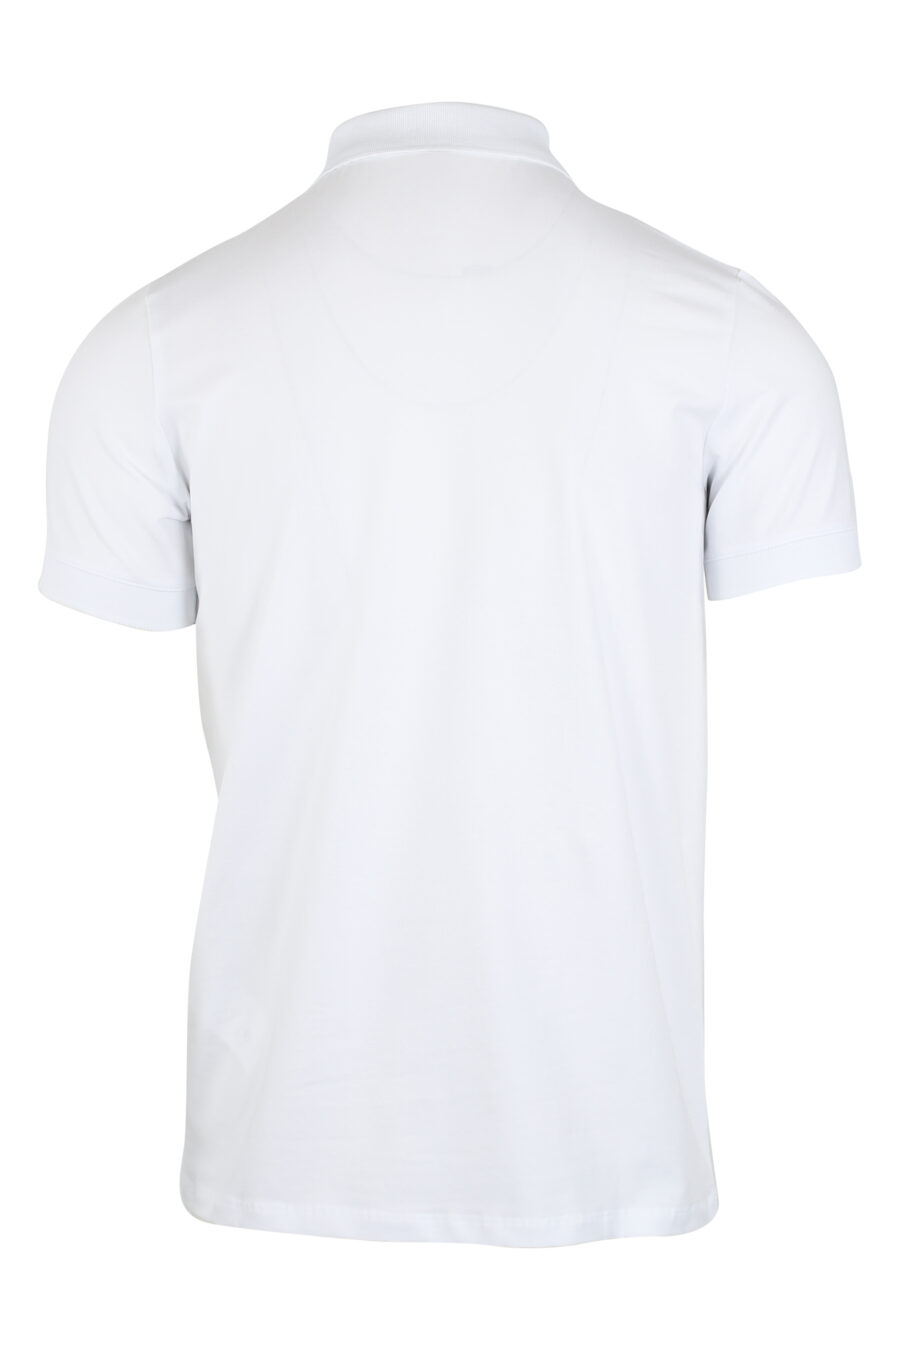 Weißes Poloshirt mit Reißverschluss und weißem Logoaufnäher - IMG 9493